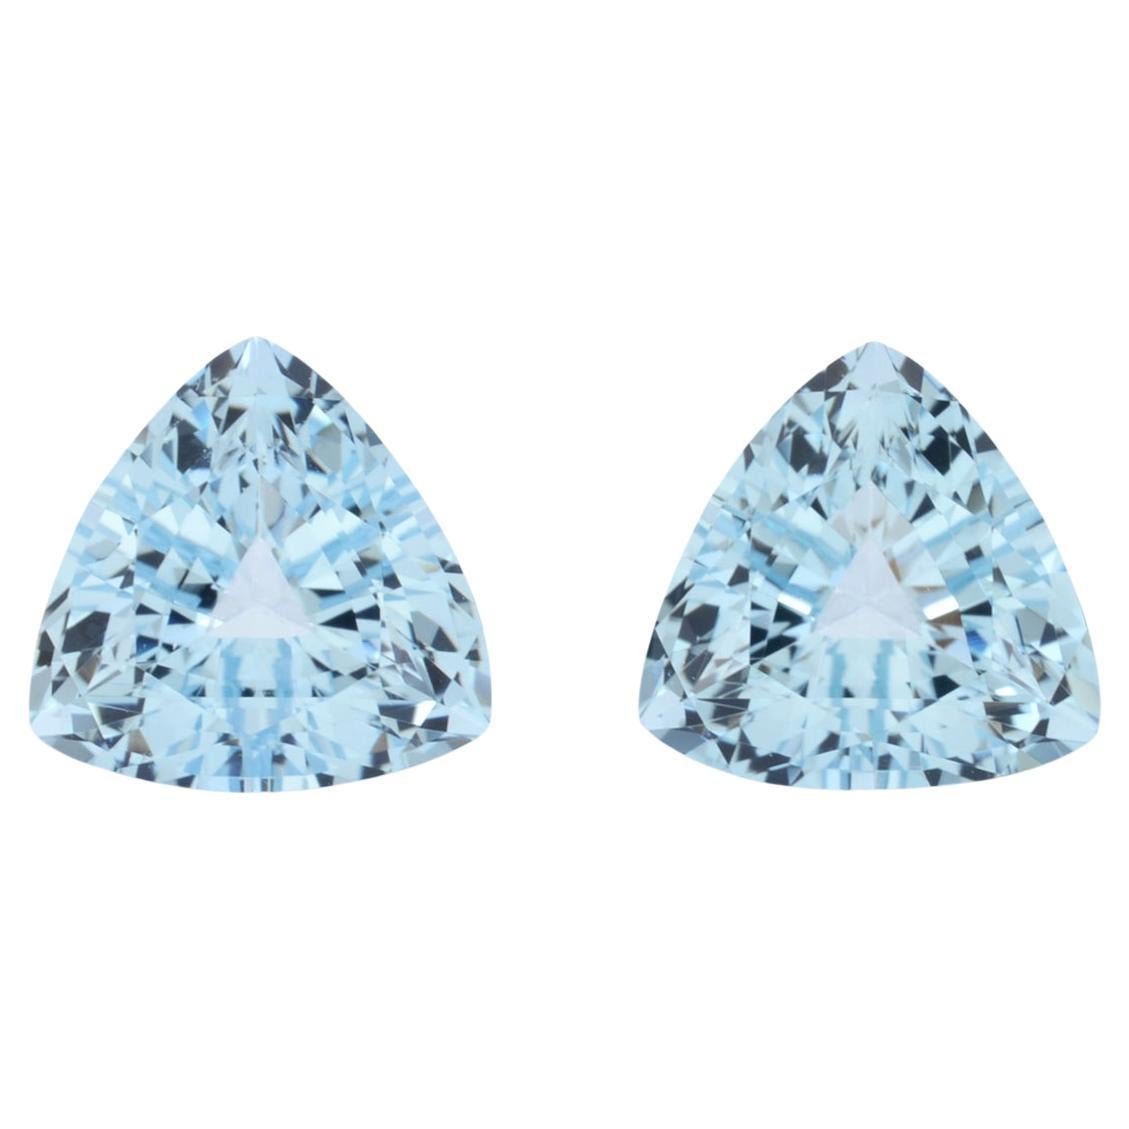 Contemporary Aquamarine Earrings Loose Gemstones 4.57 Carat Trillion Unmounted Pair For Sale